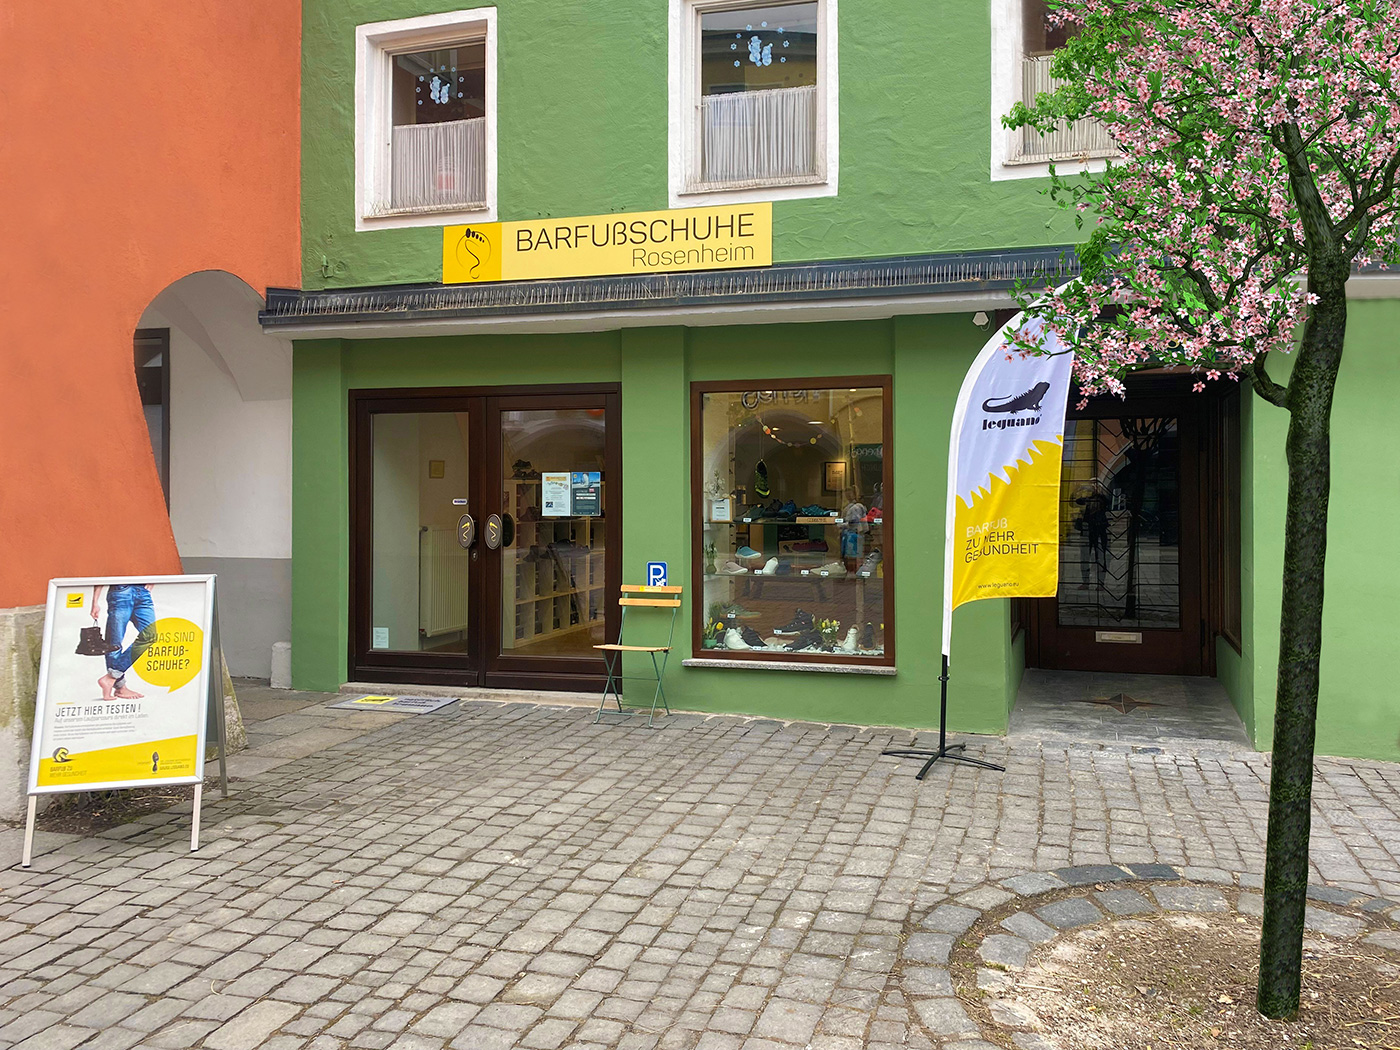 Vertrappen Versnipperd alleen Laden für Leguano Schuhe | BARFUßSCHUHE Rosenheim